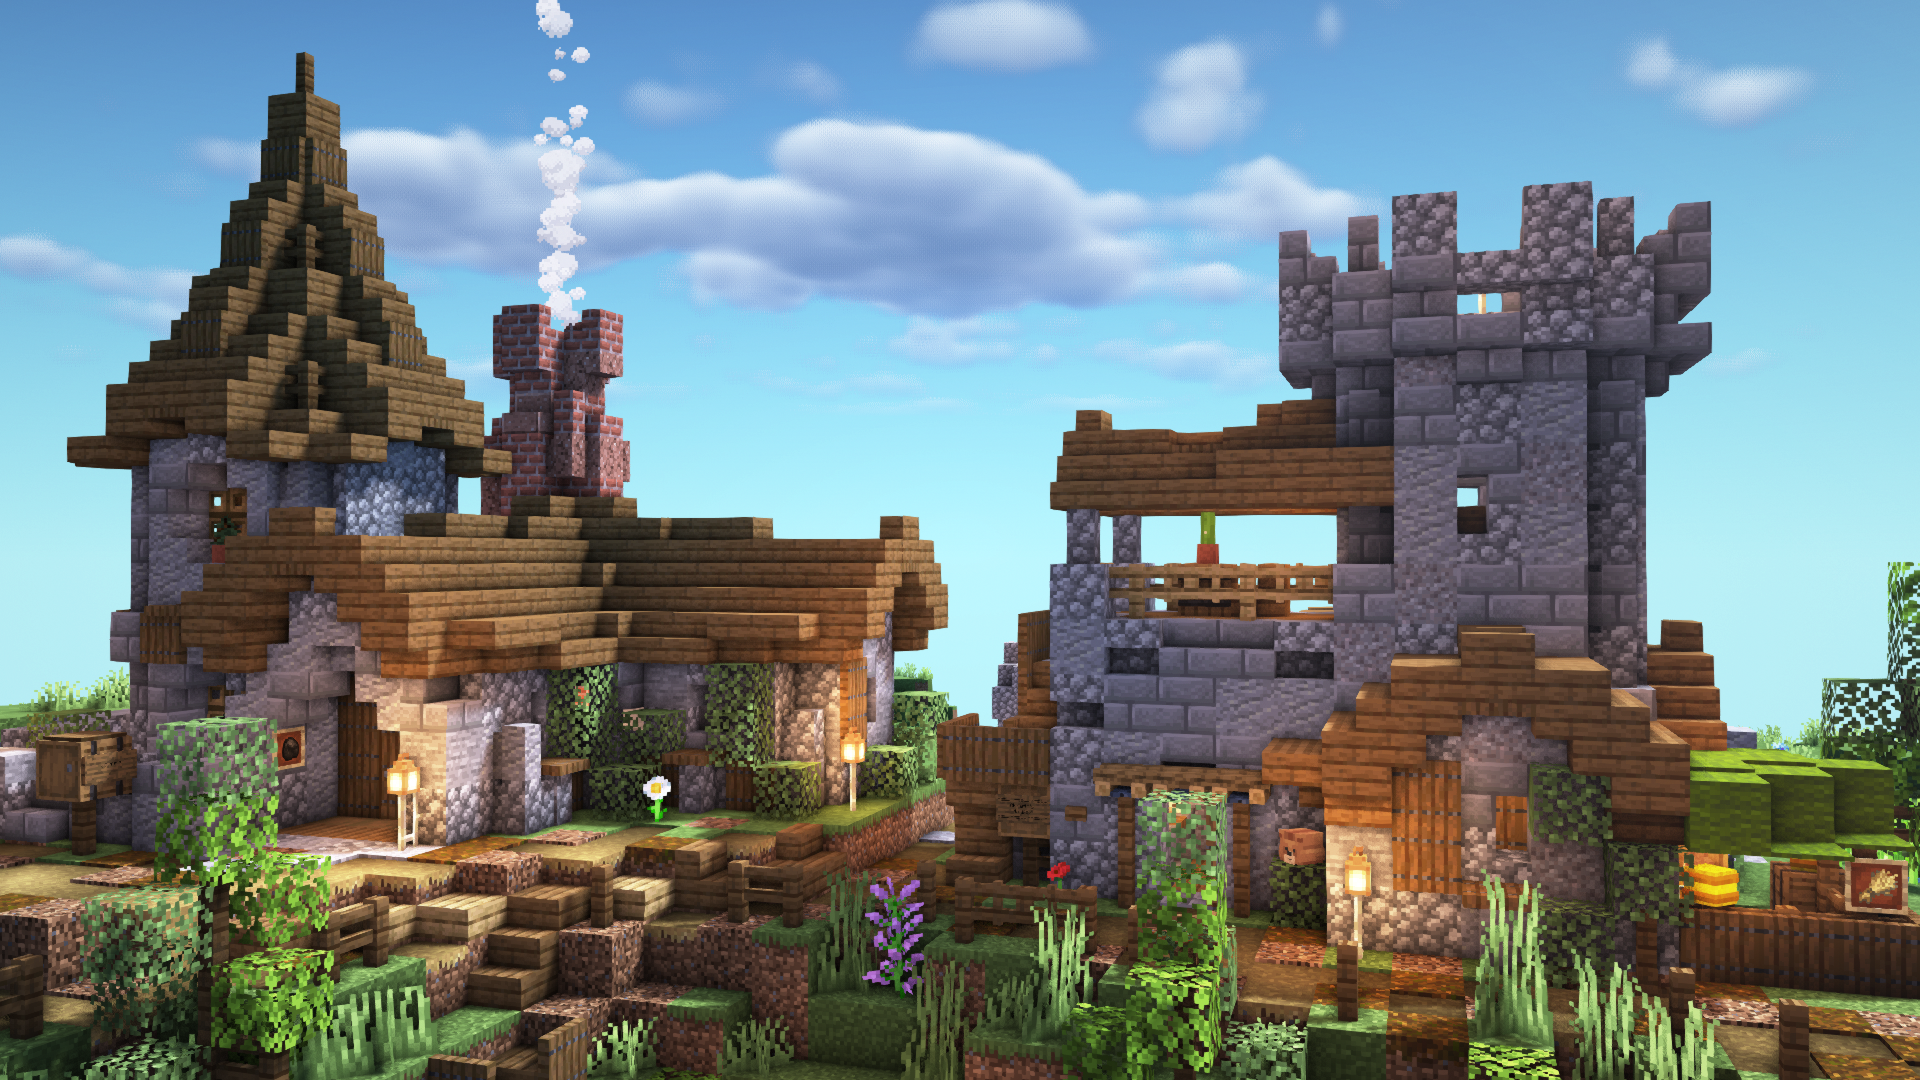 Minecraft Medieval Village. Minecraft medieval village, Minecraft medieval, Minecraft architecture